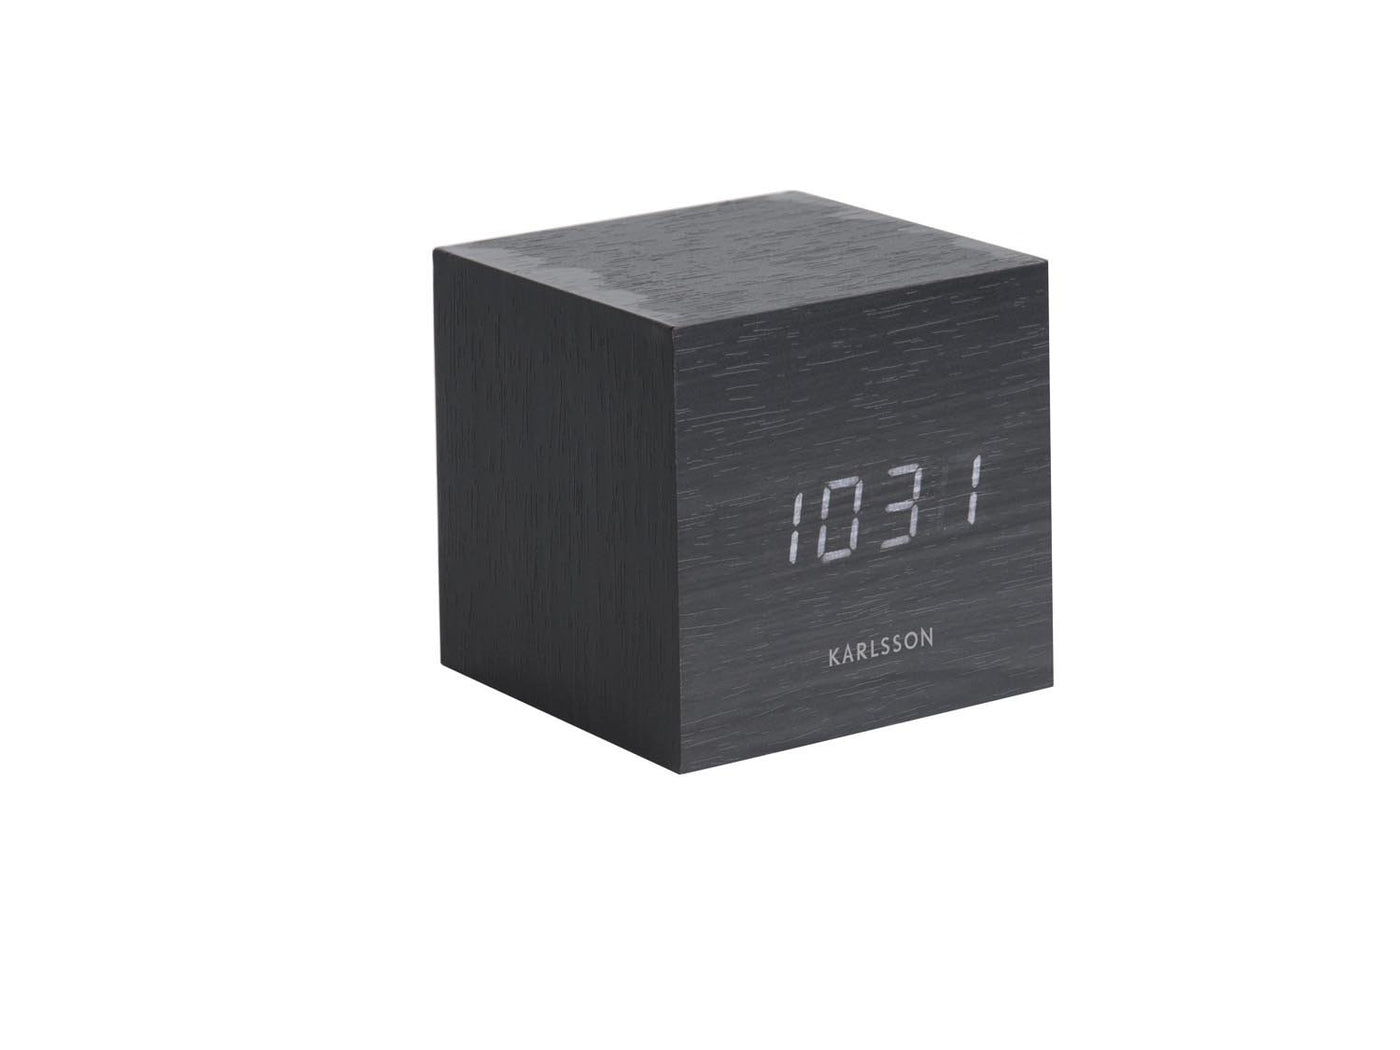 Karlsson Alarm Clock Mini Cube Black Wood - timeframedclocks